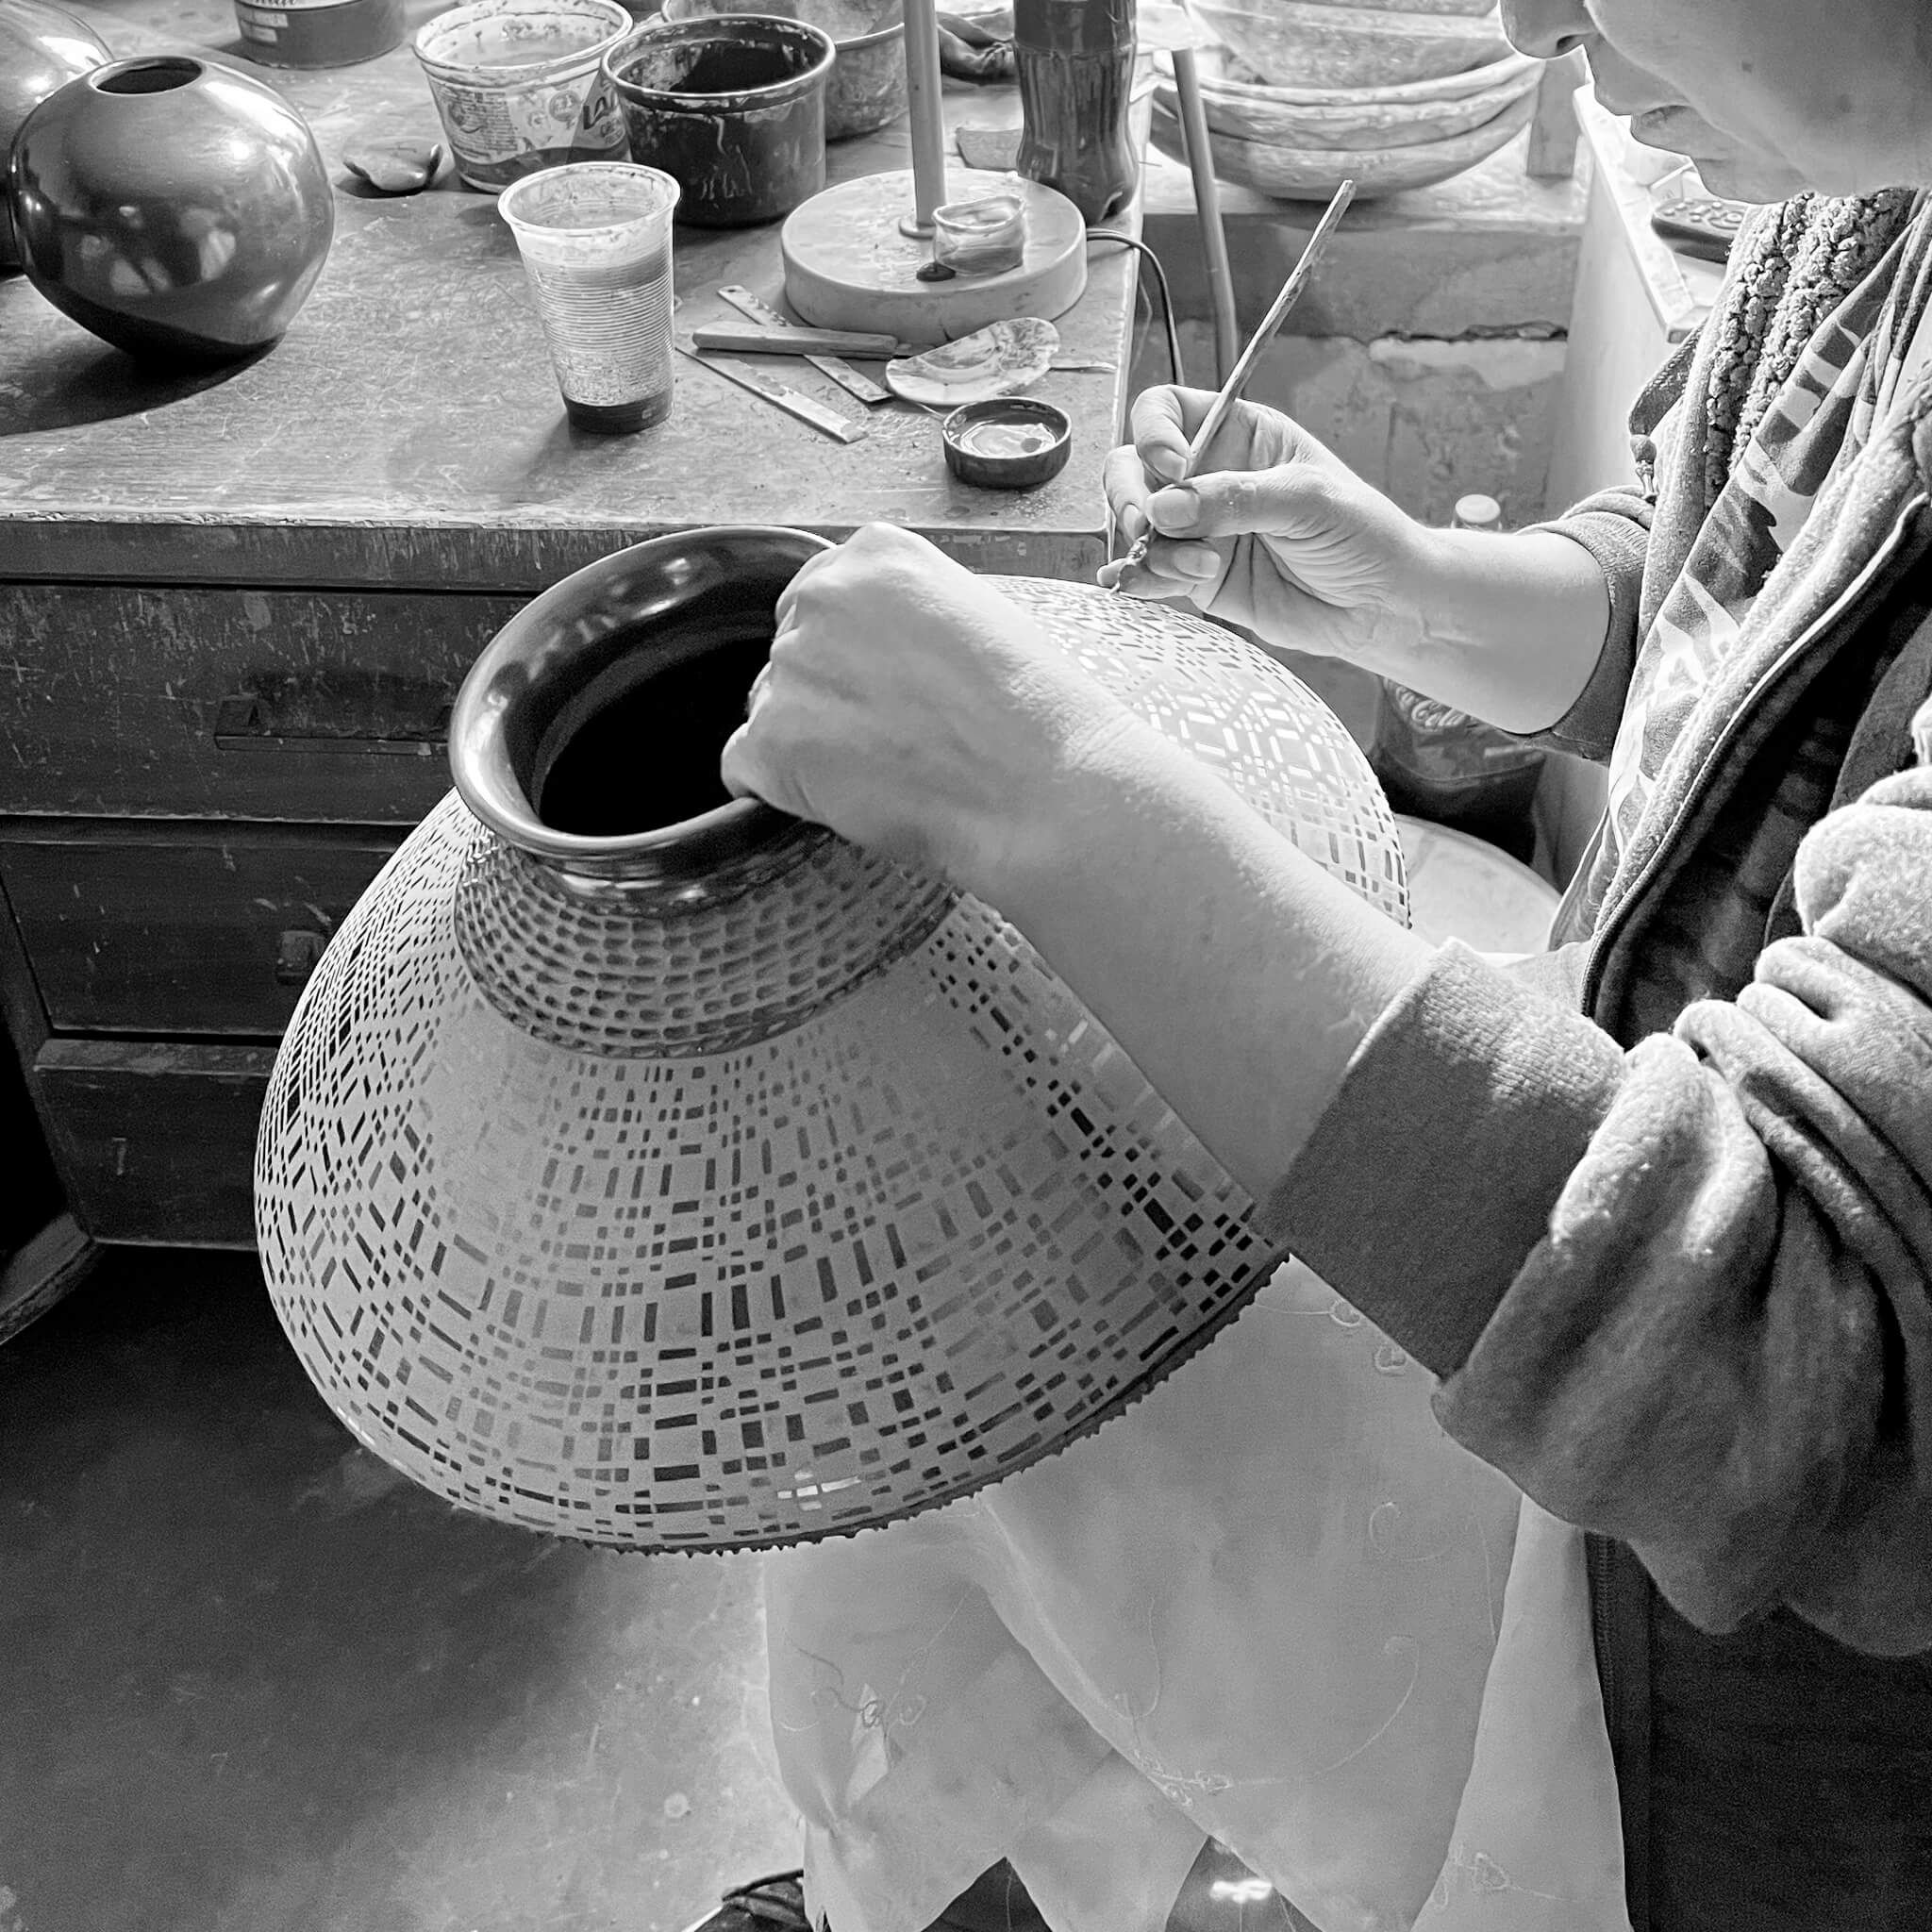 A Mexican artisan creating Mata Ortiz pottery.